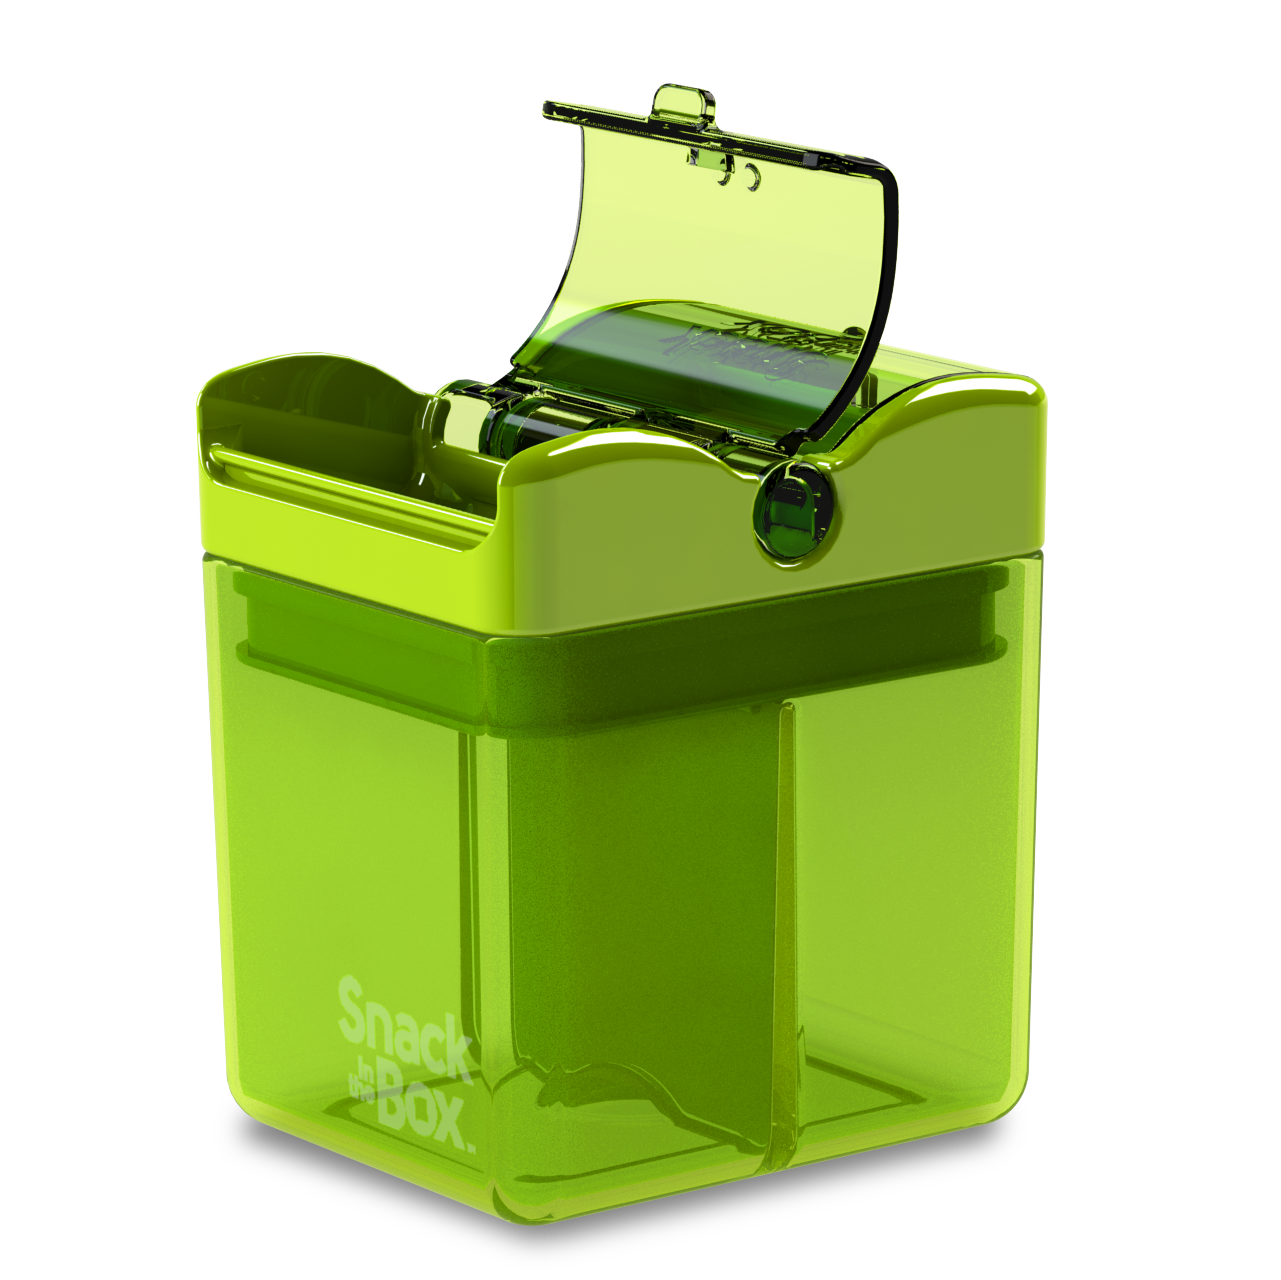 Precidio Design 1001GR Snack in The Box New Little Finger-Friendly Eco-Friendly Reusable Snack Box Container Green 